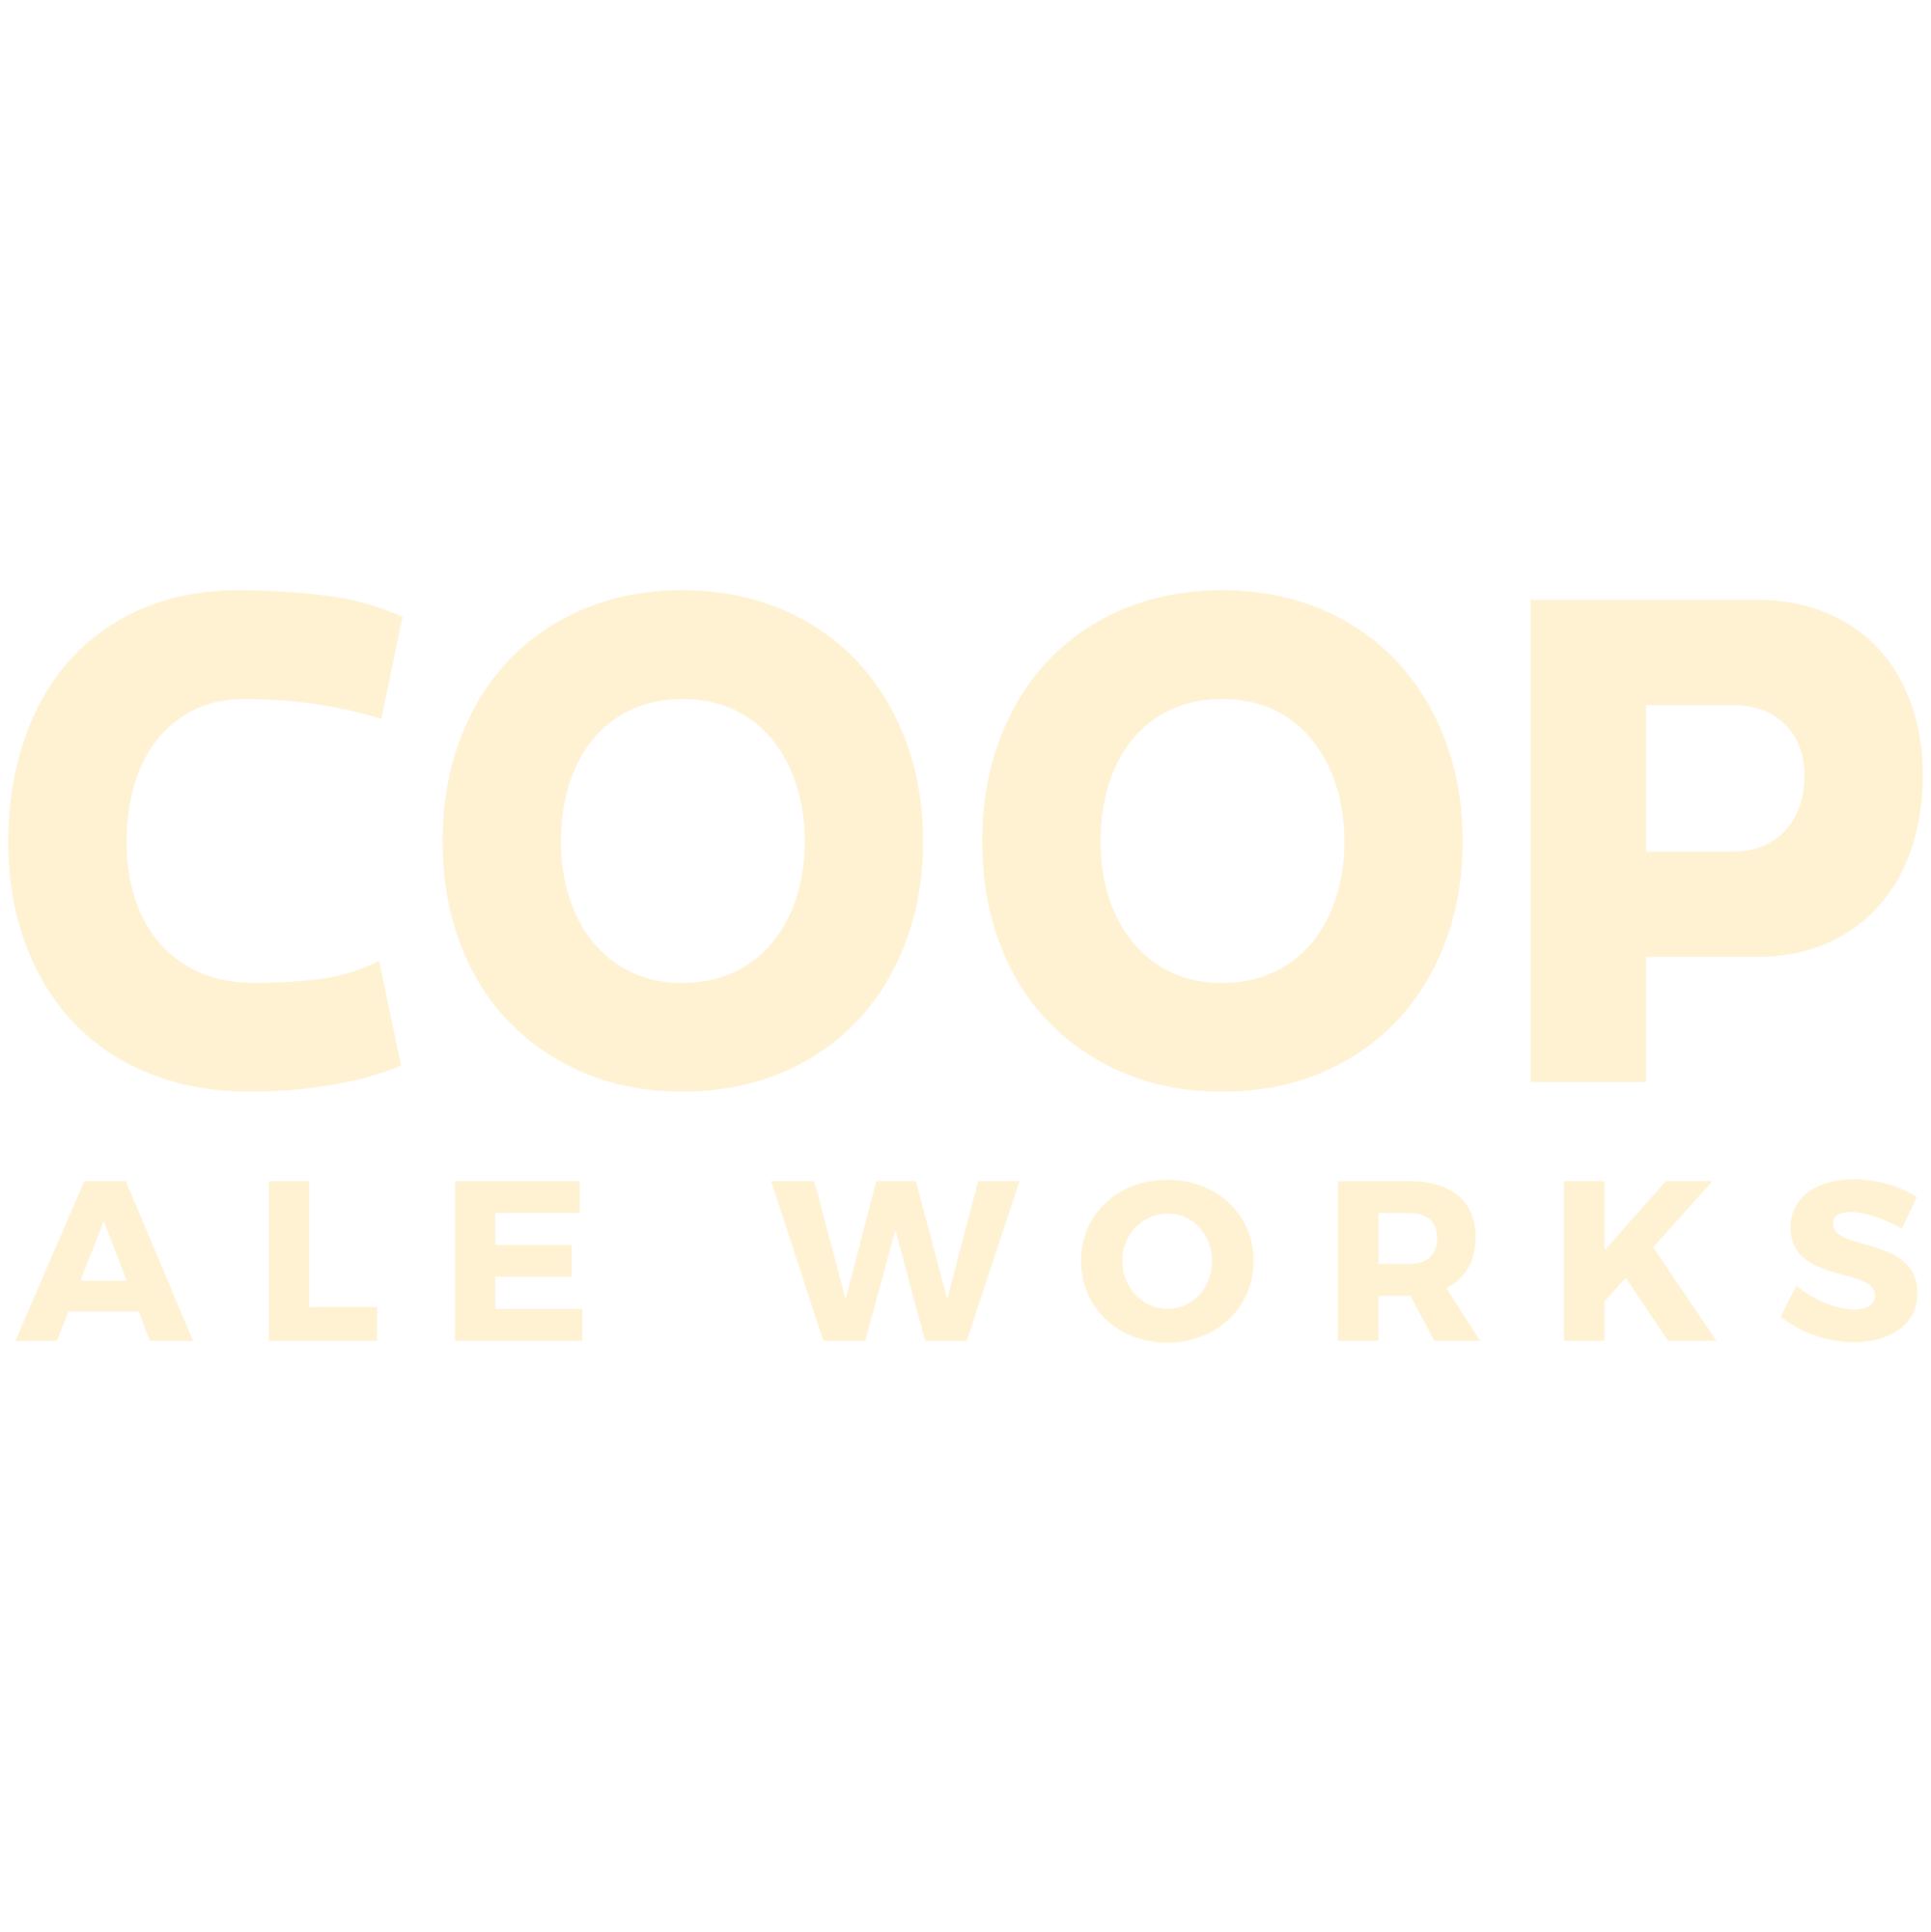 Coop Ale Works logo tan